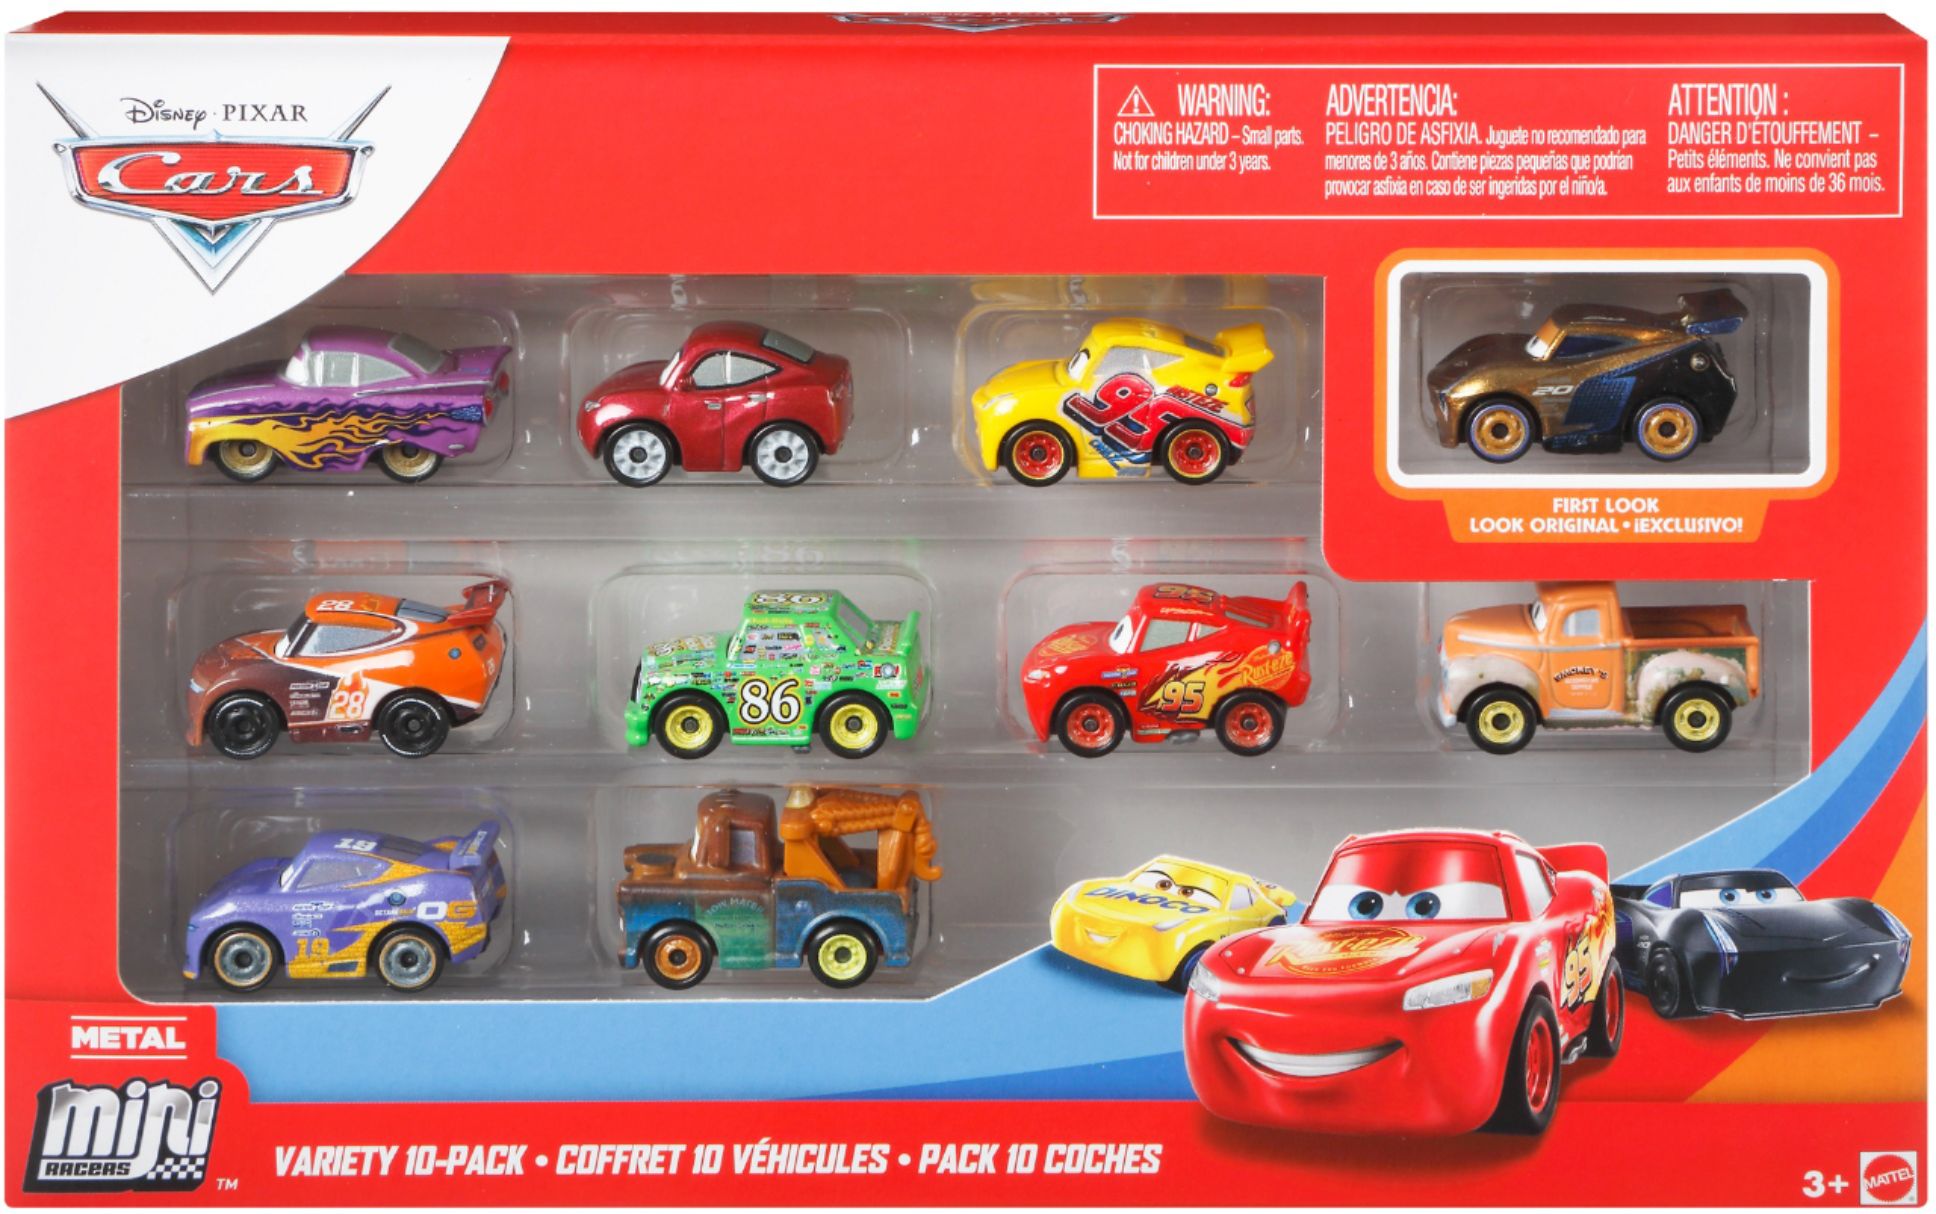 disney pixar cars mini racers 15 pack